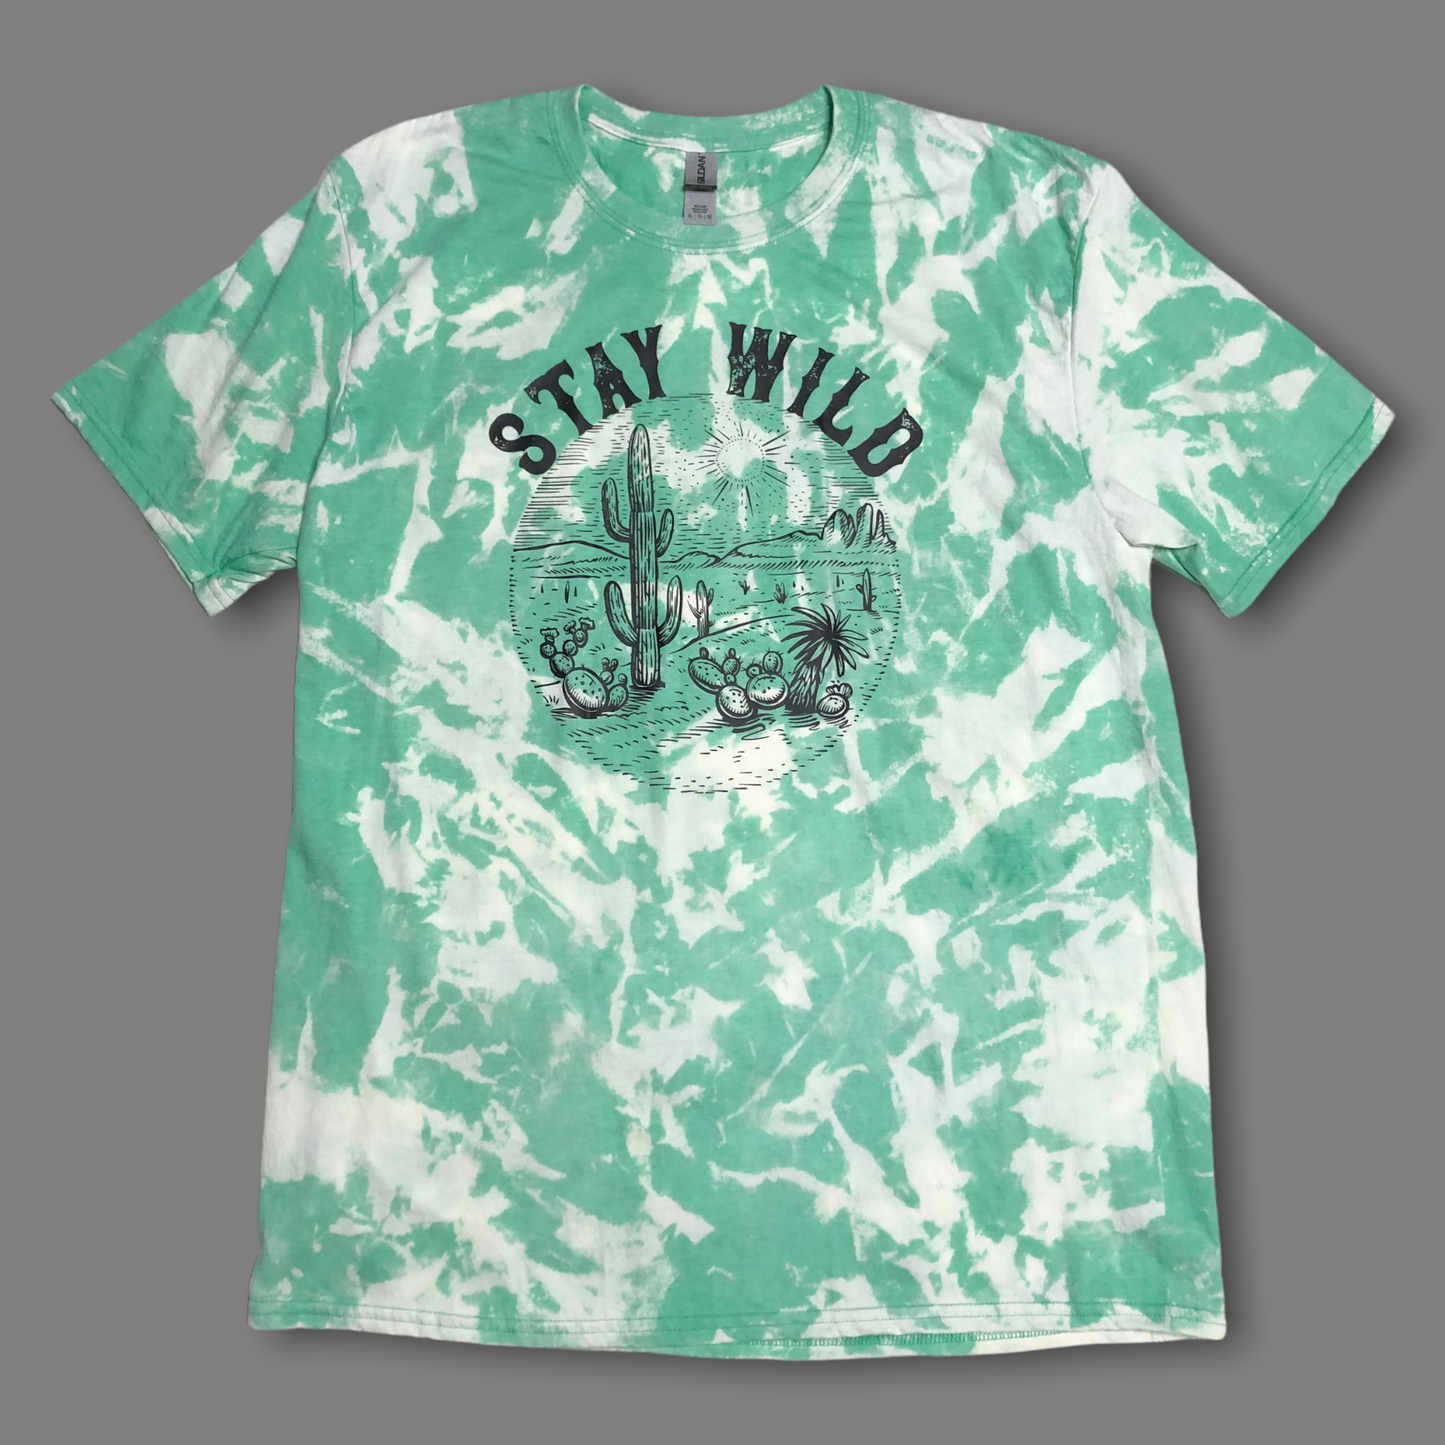 “Stay Wild” Desert Green Bleached Shirt